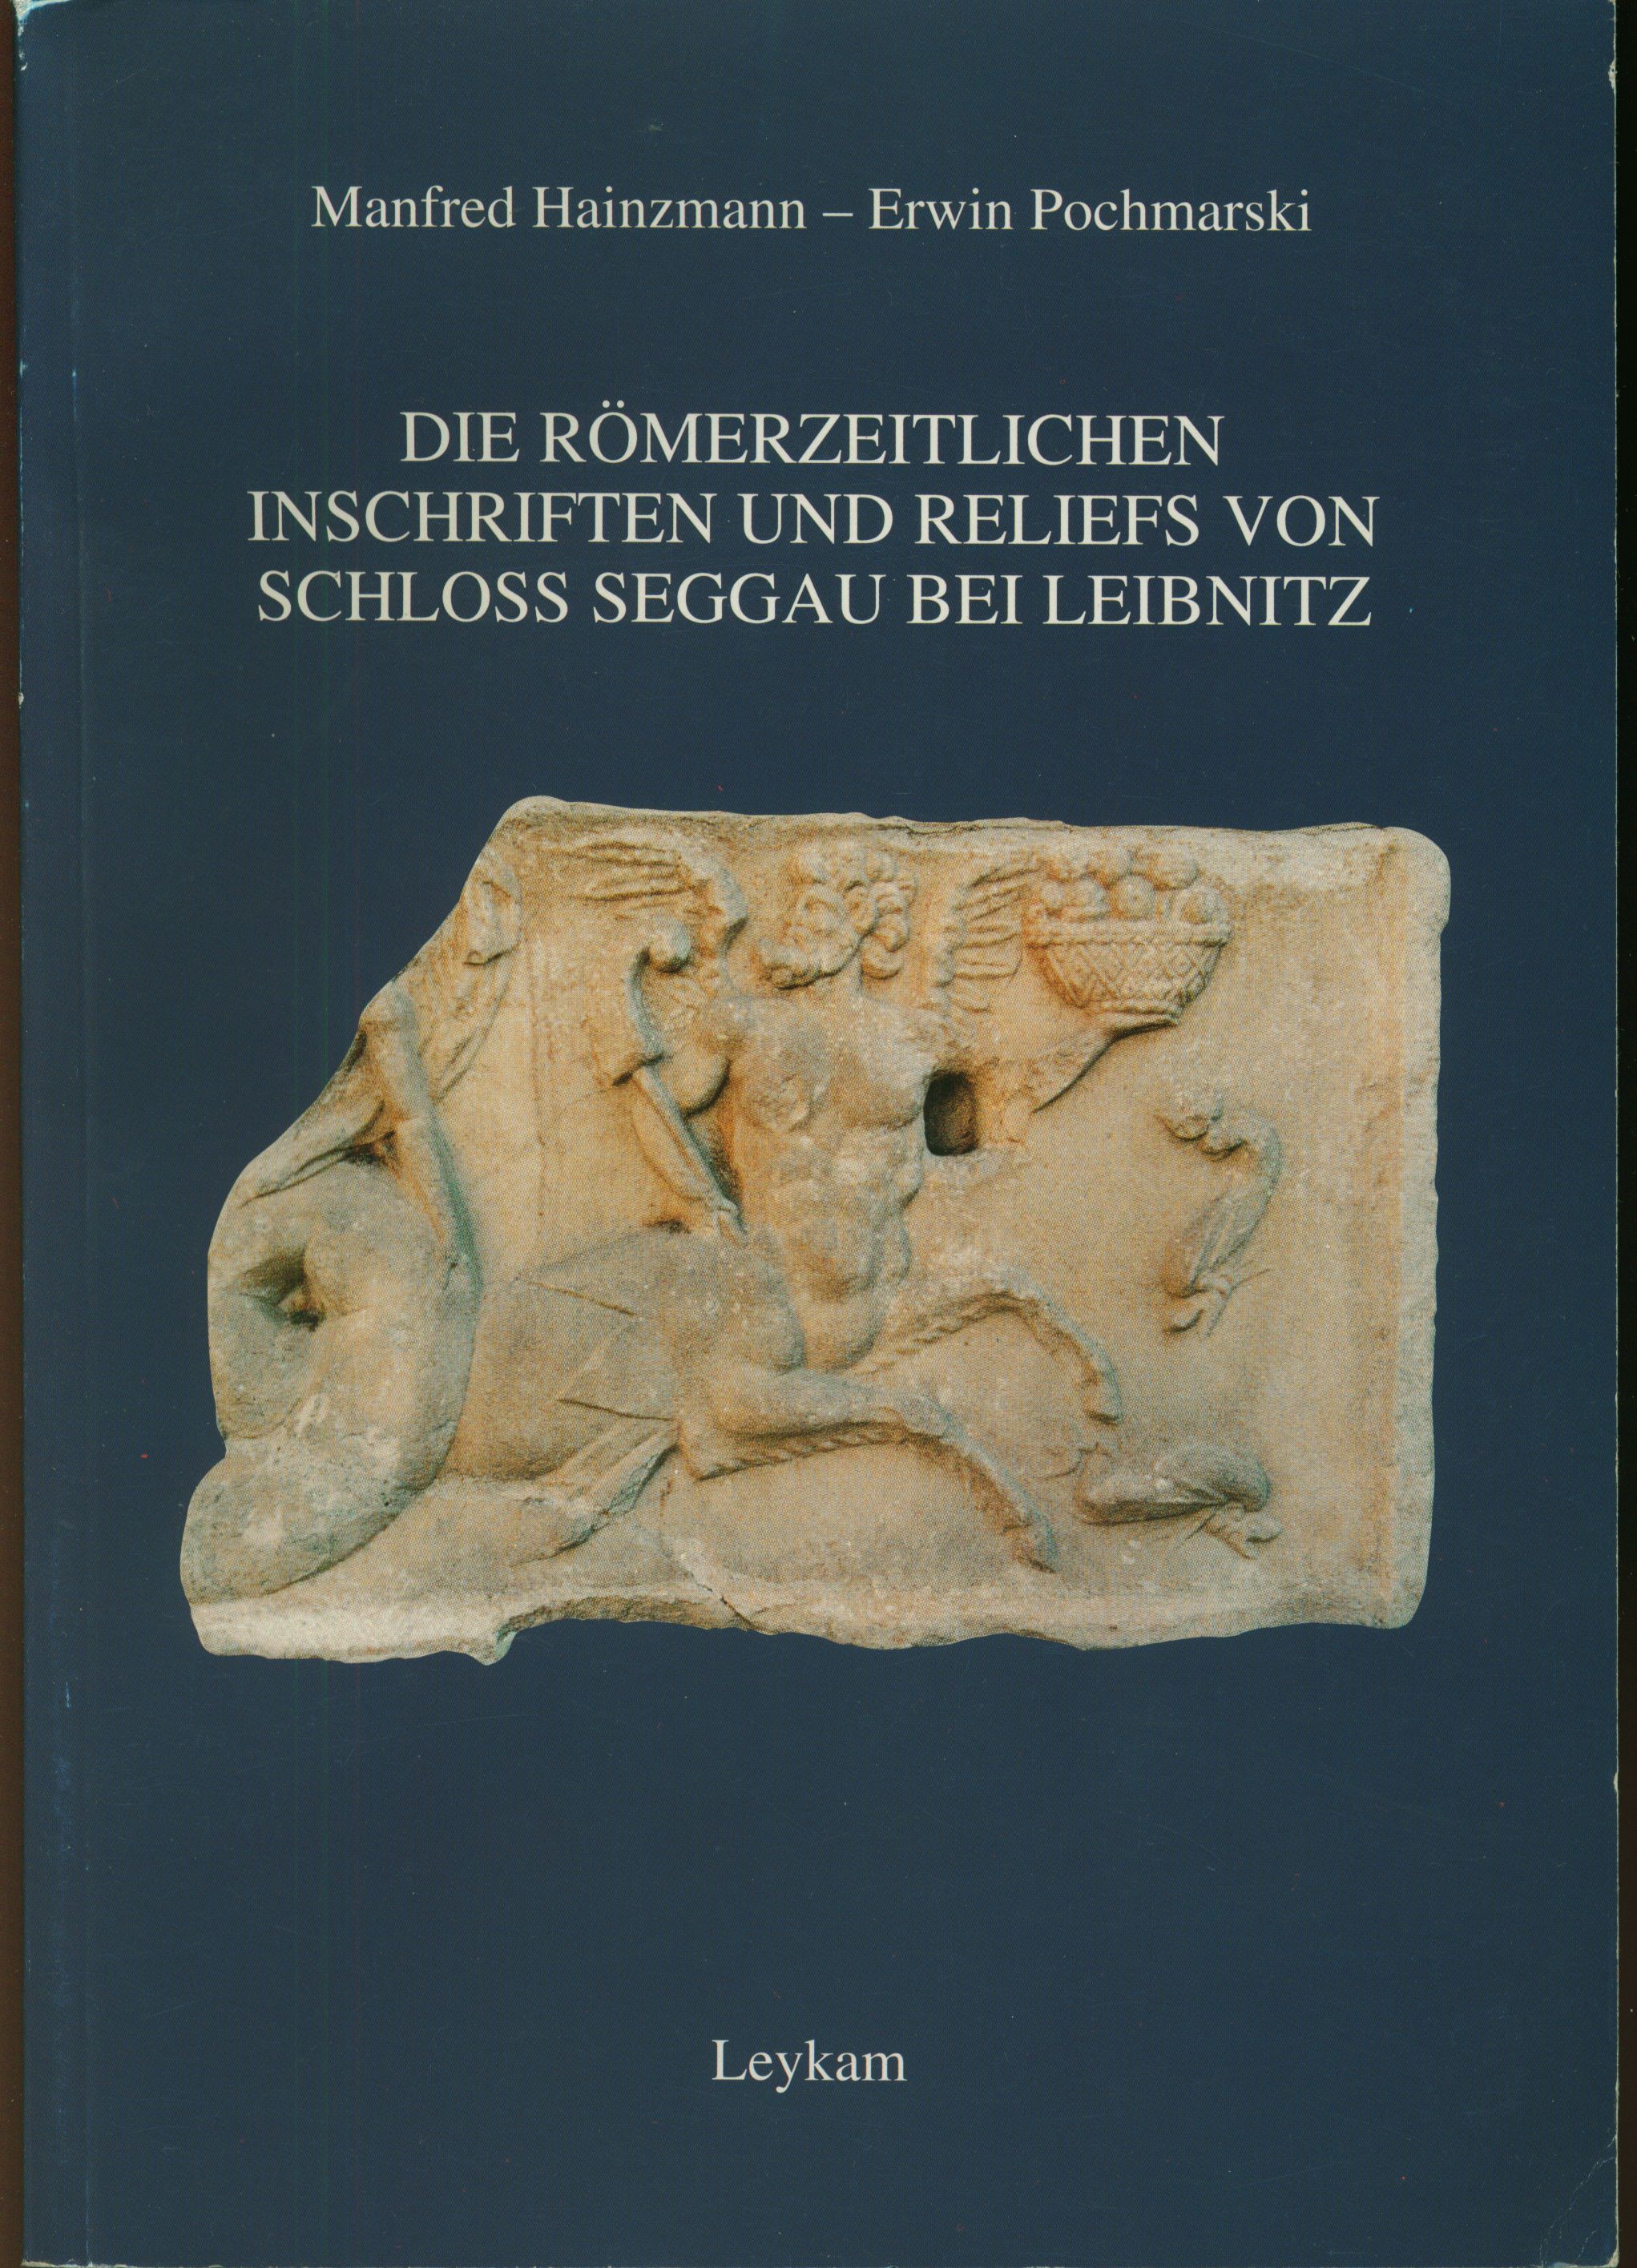 Die römerzeitlichen Inschriften und Reliefs von Schloß Seggau bei Leibnitz - Manfred Hainzmann ; Erwin Pochmarski